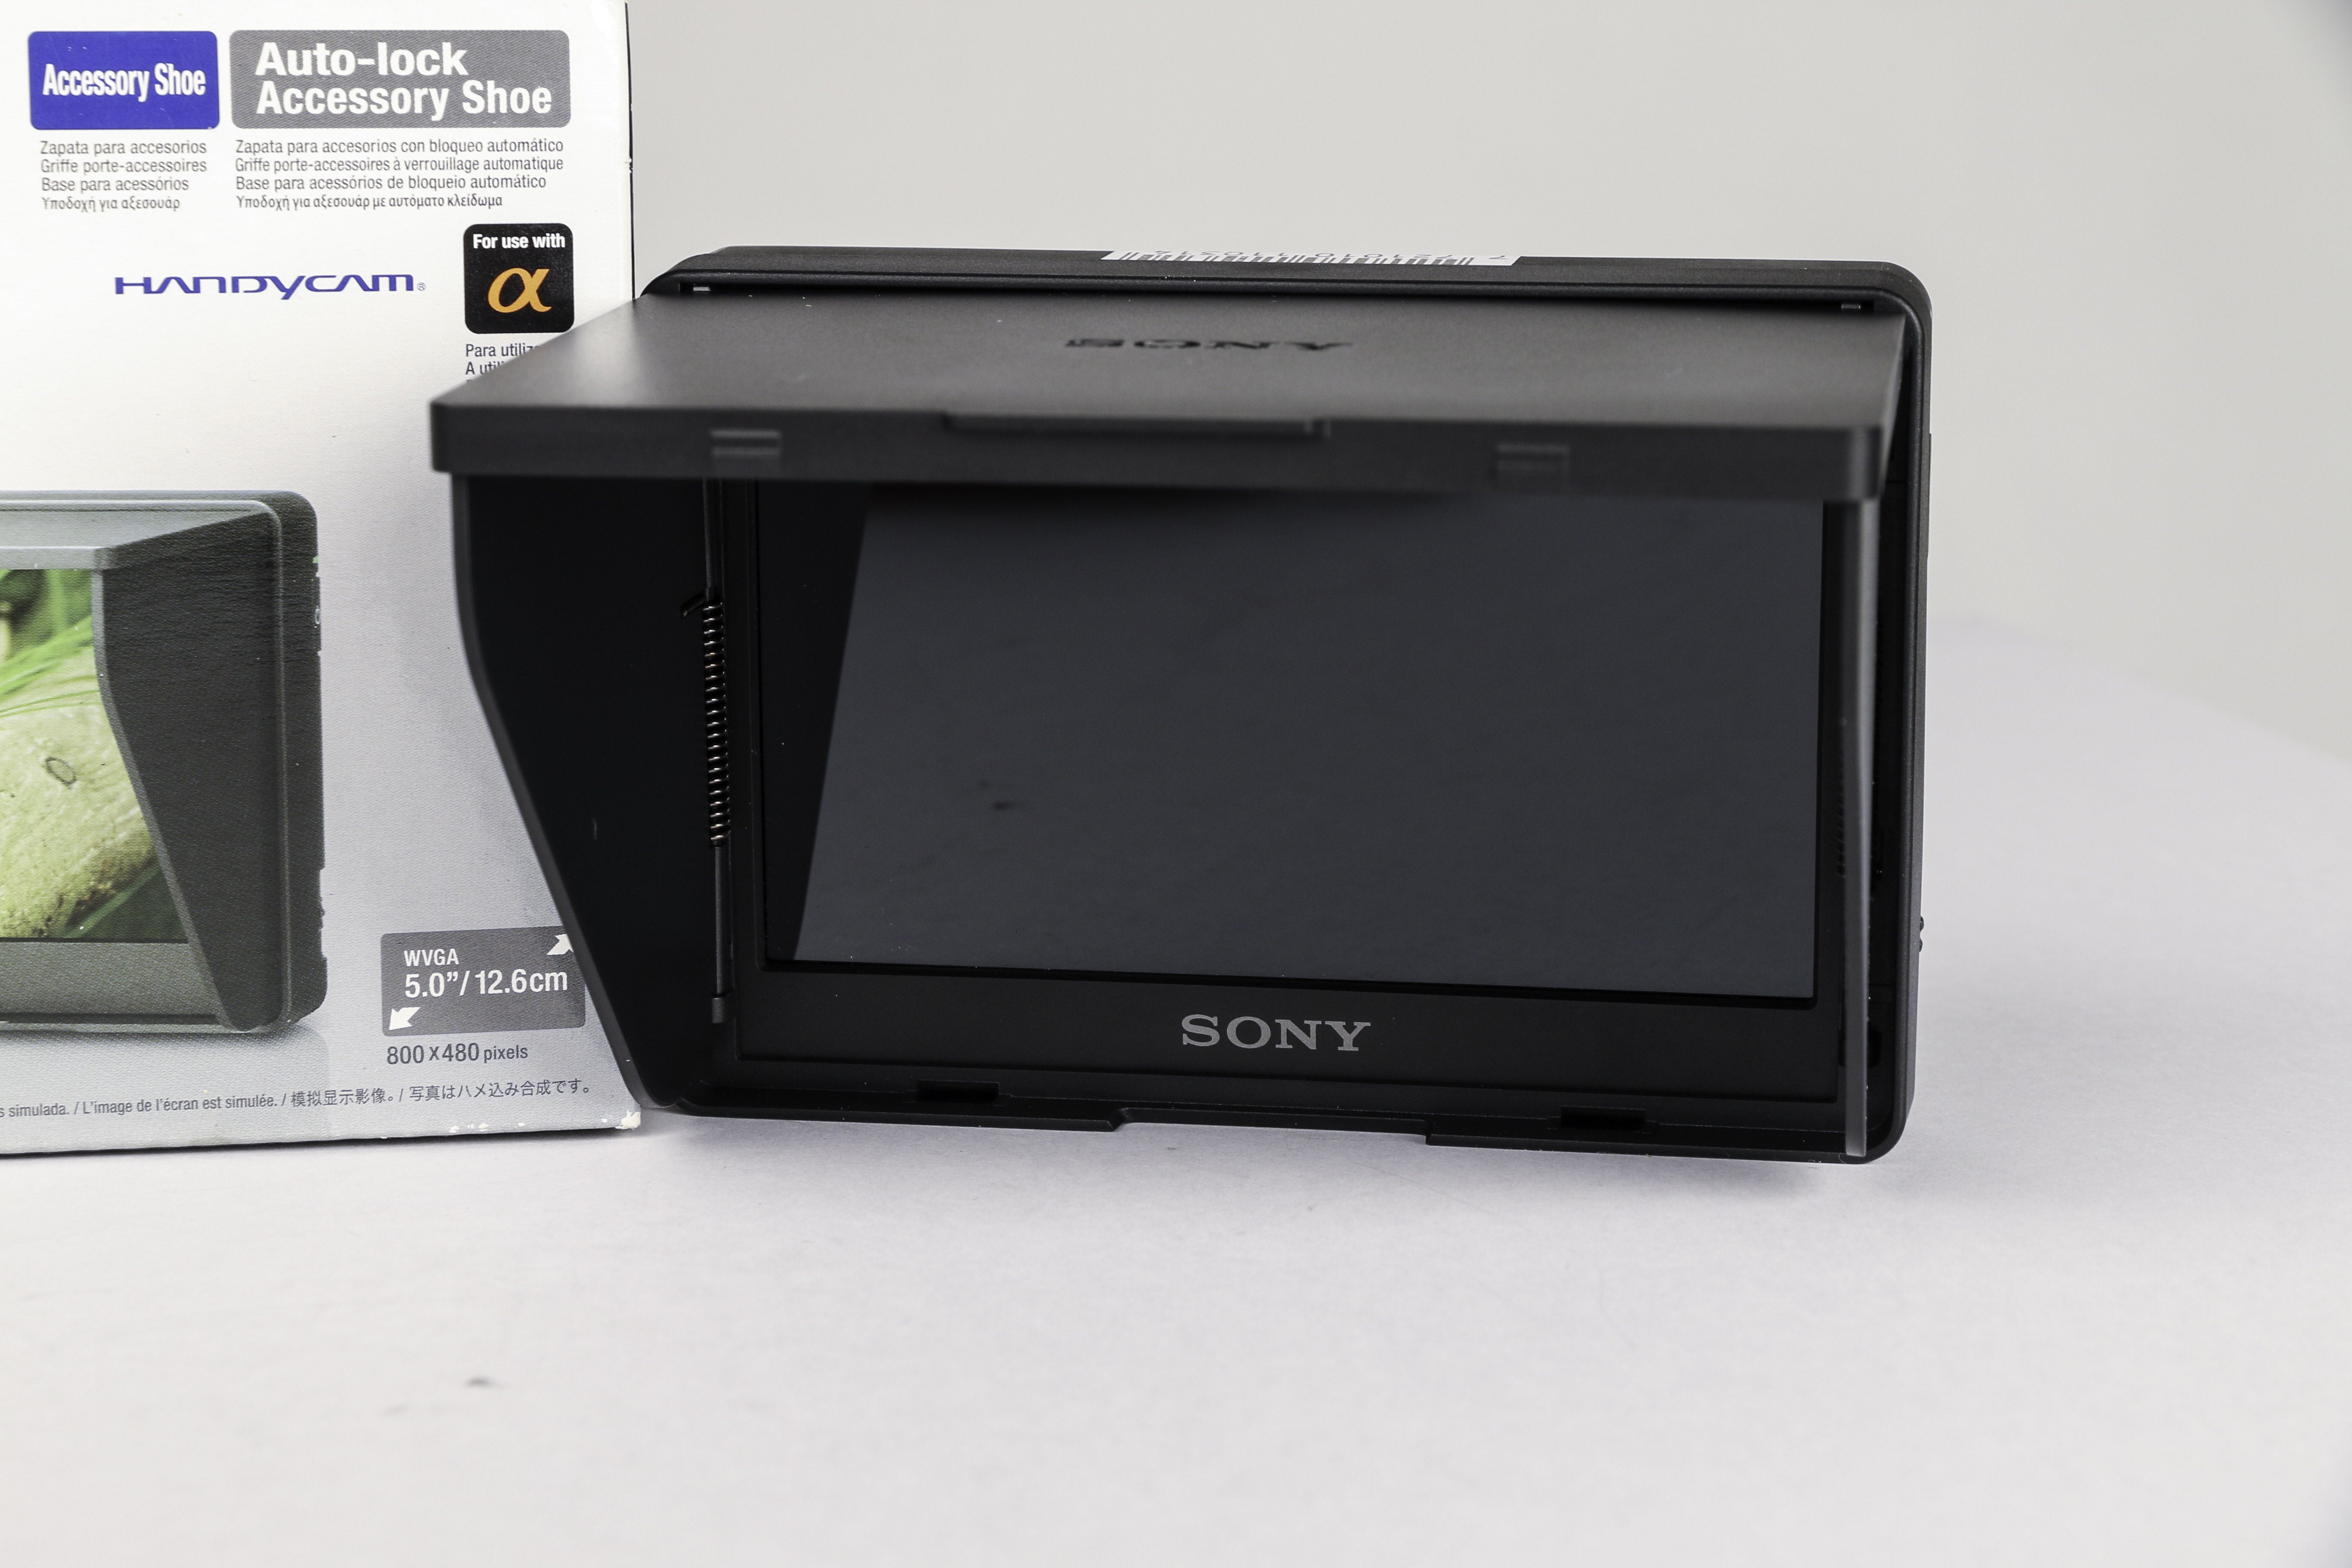 Sony CLM-V55 gebraucht Bild 01